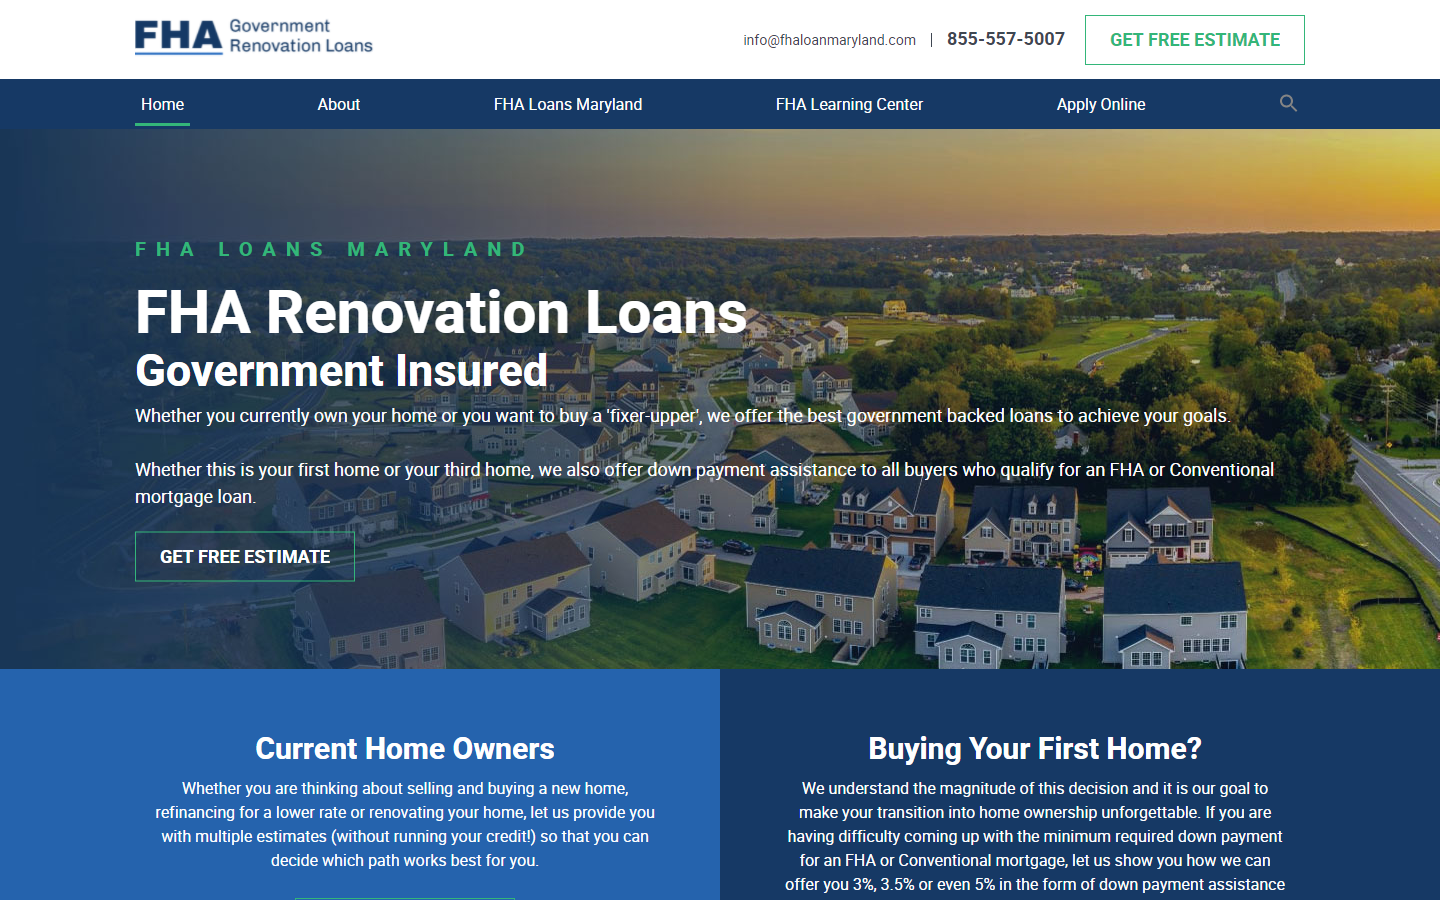 FHA Loans site